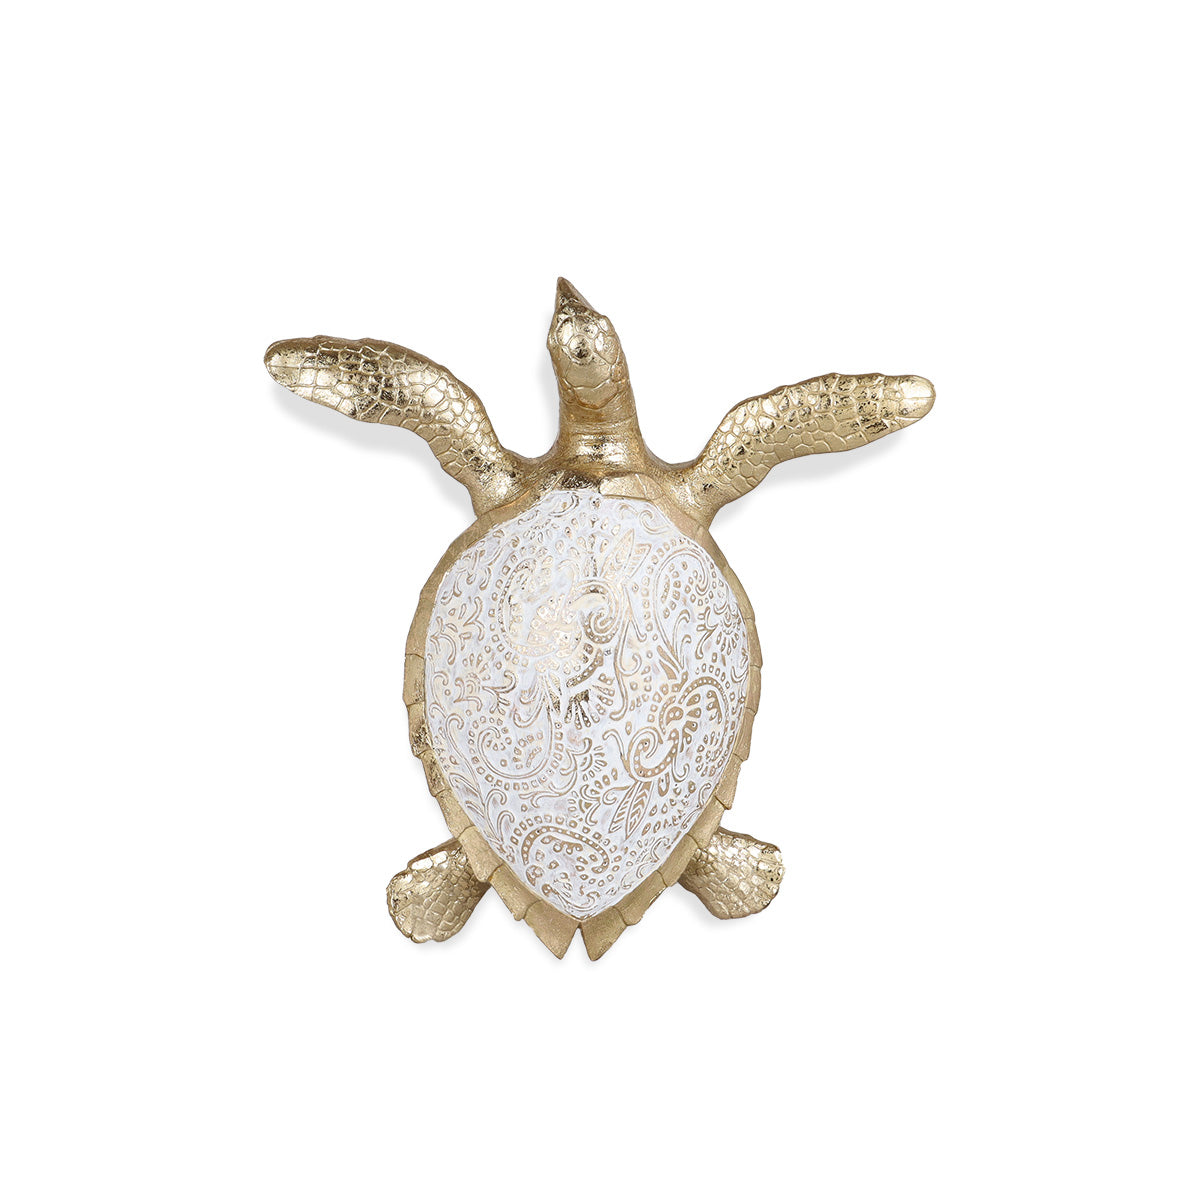 Sanya Turtle Small - Figurine | Vinoti Living